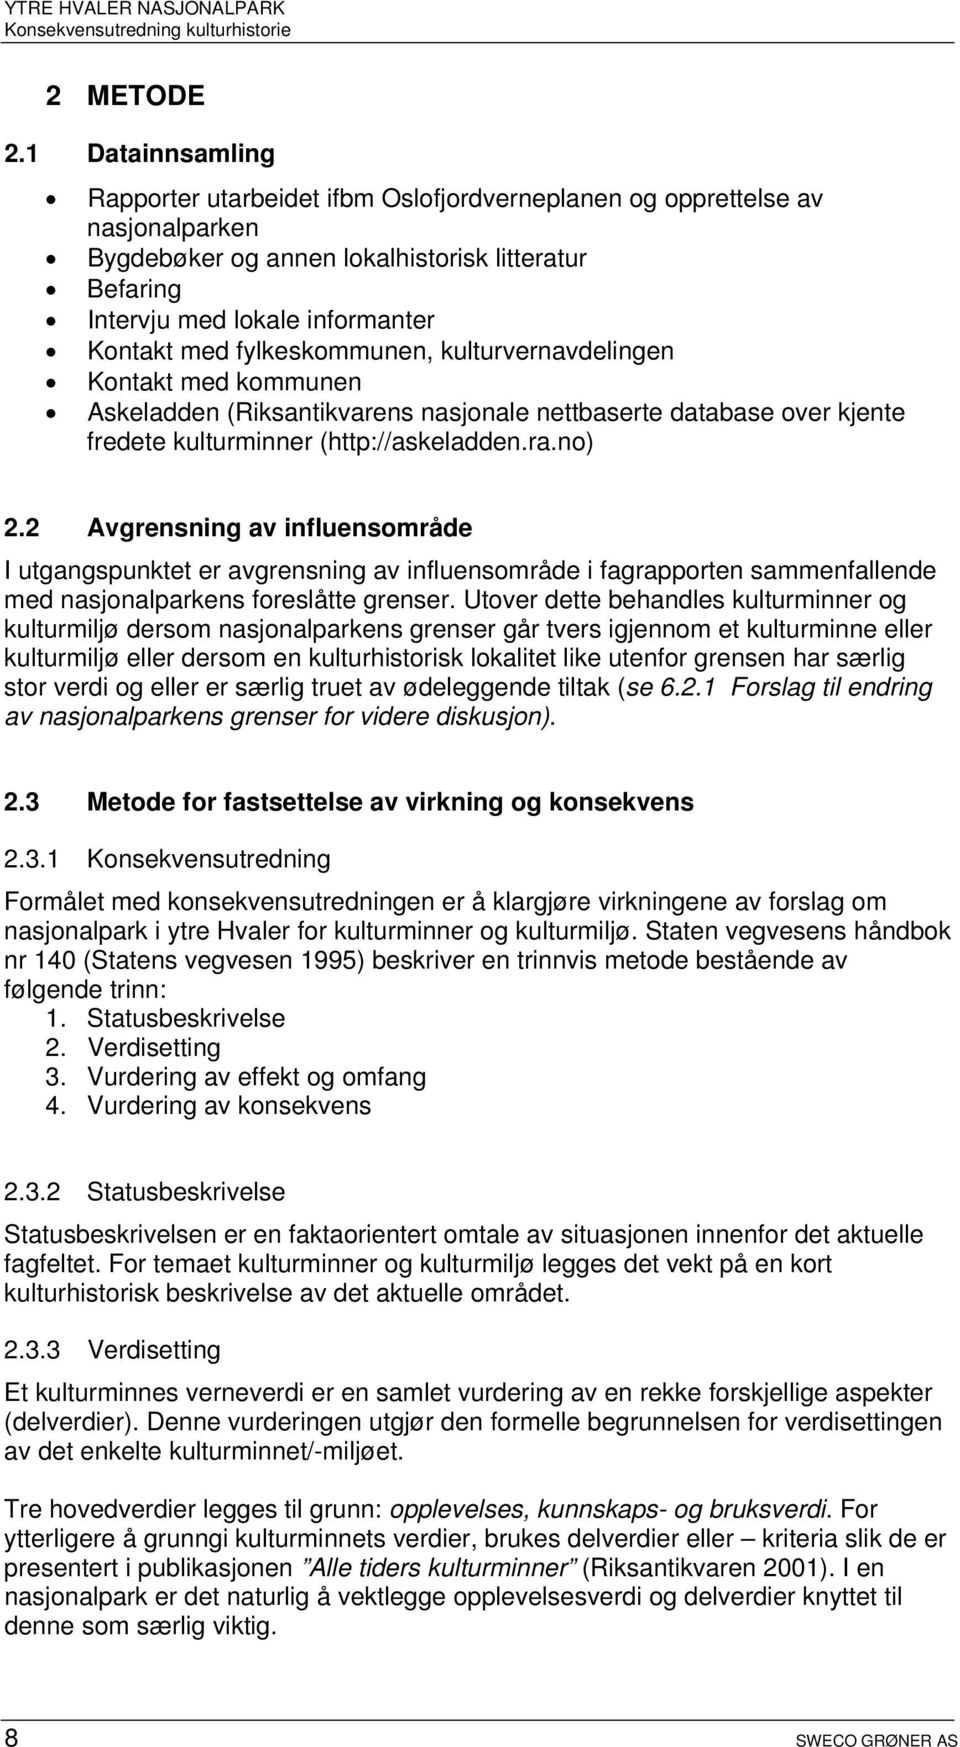 fylkeskommunen, kulturvernavdelingen Kontakt med kommunen Askeladden (Riksantikvarens nasjonale nettbaserte database over kjente fredete kulturminner (http://askeladden.ra.no) 2.